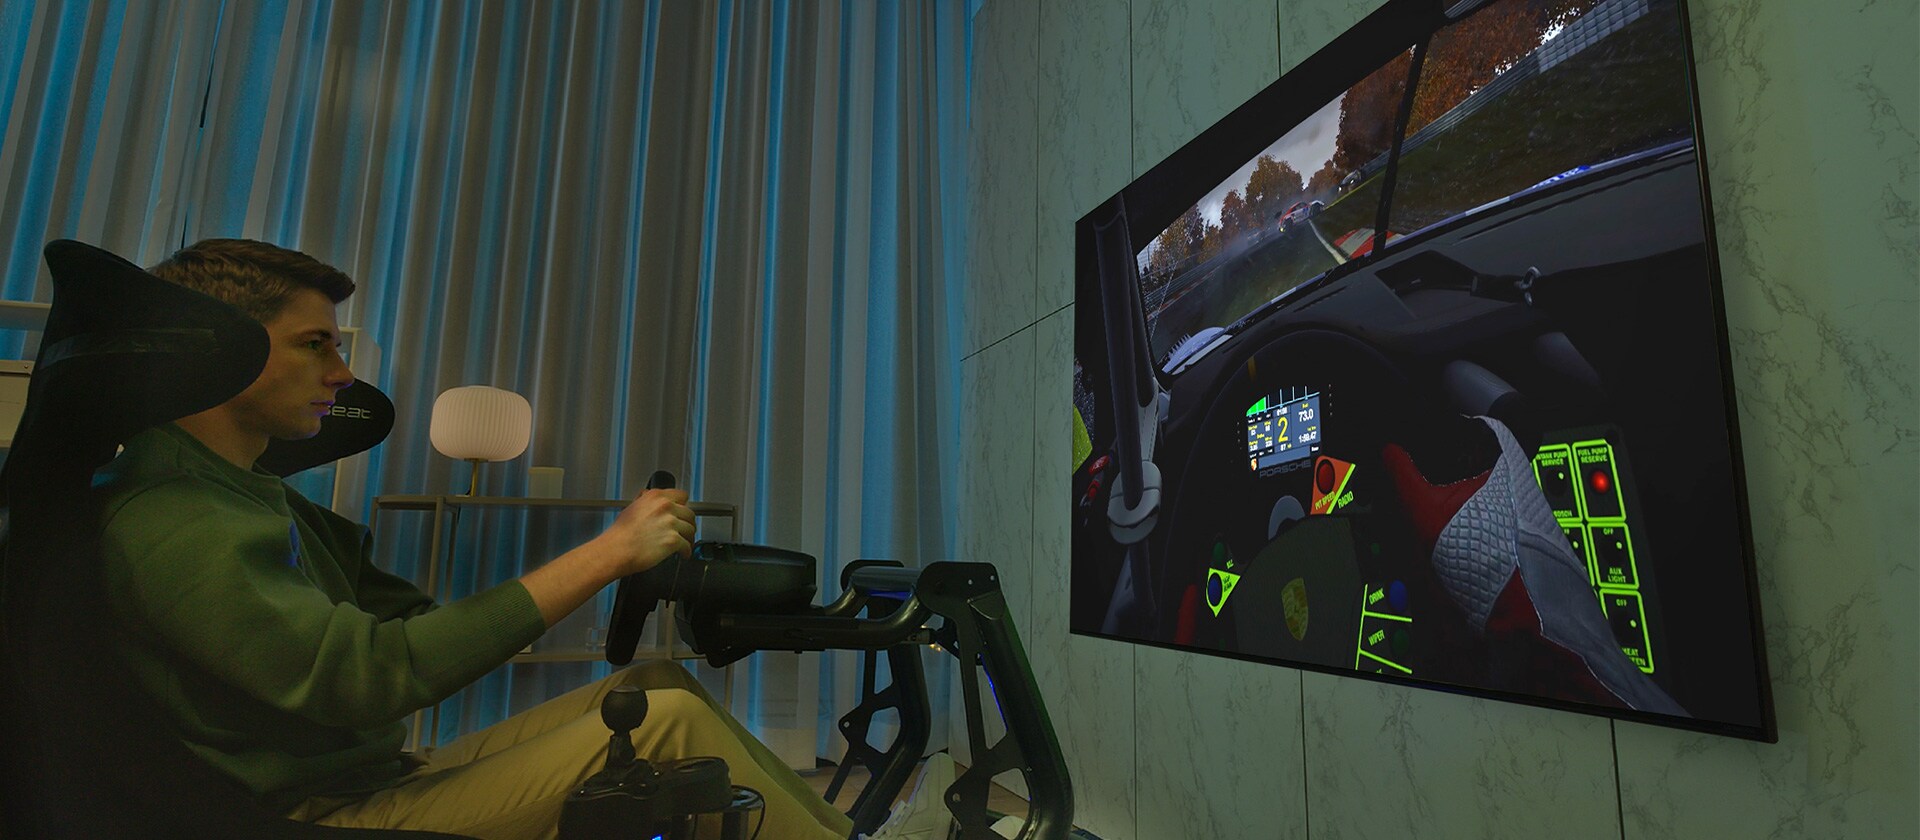 Muškarac sjedi na trkaćem sjedalu ispred velikog televizora i igra trkaću videoigru.